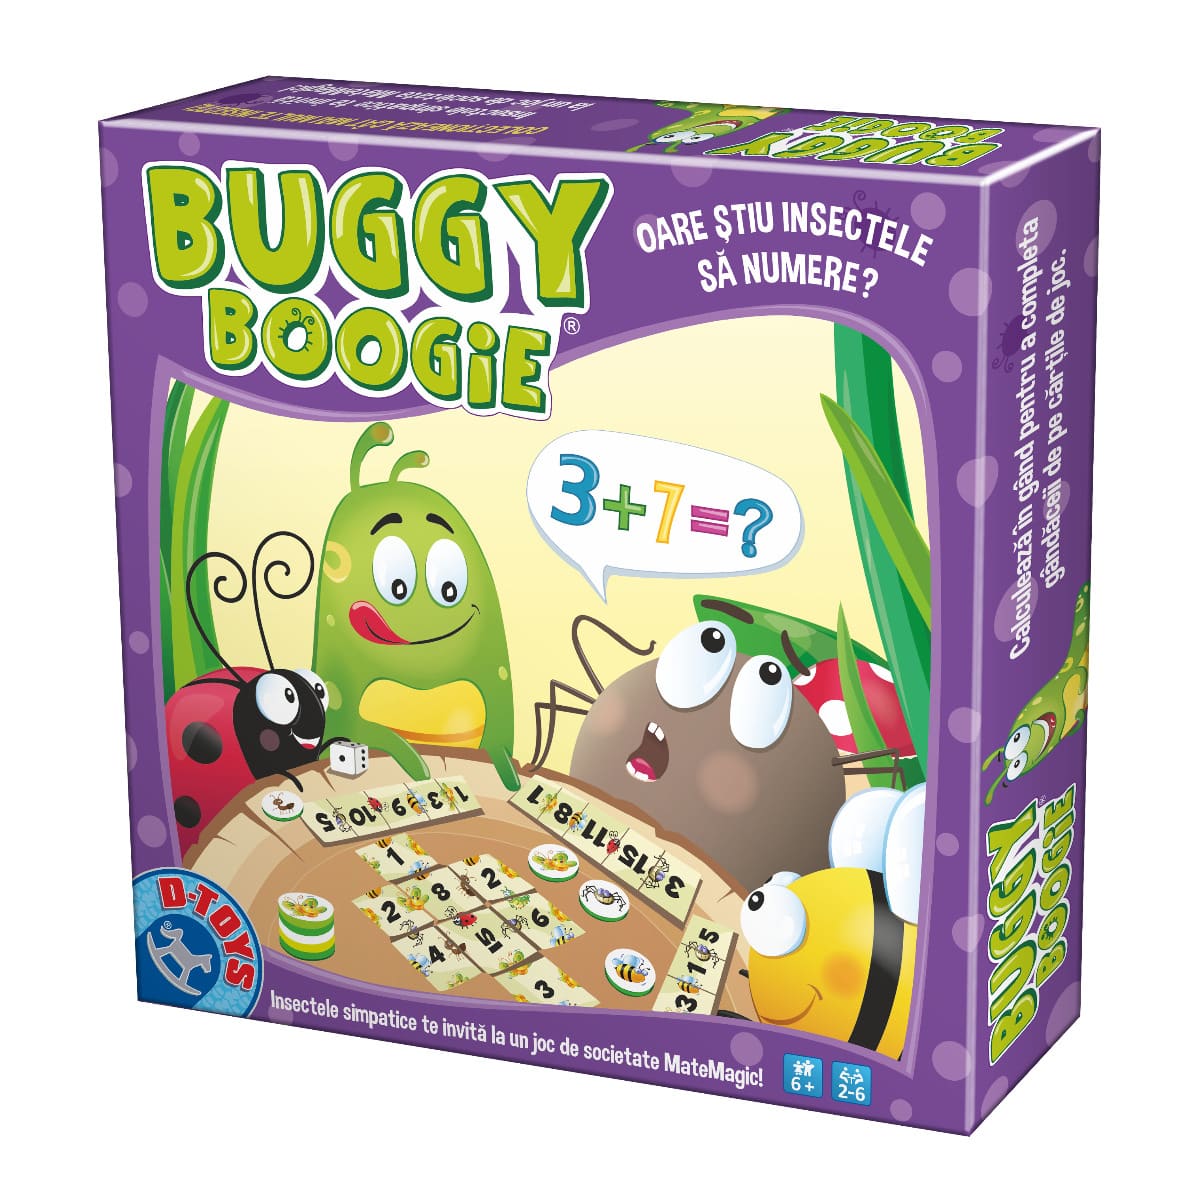 Joc Buggy Boogie - Joc interactiv de învățat operații matematice simple